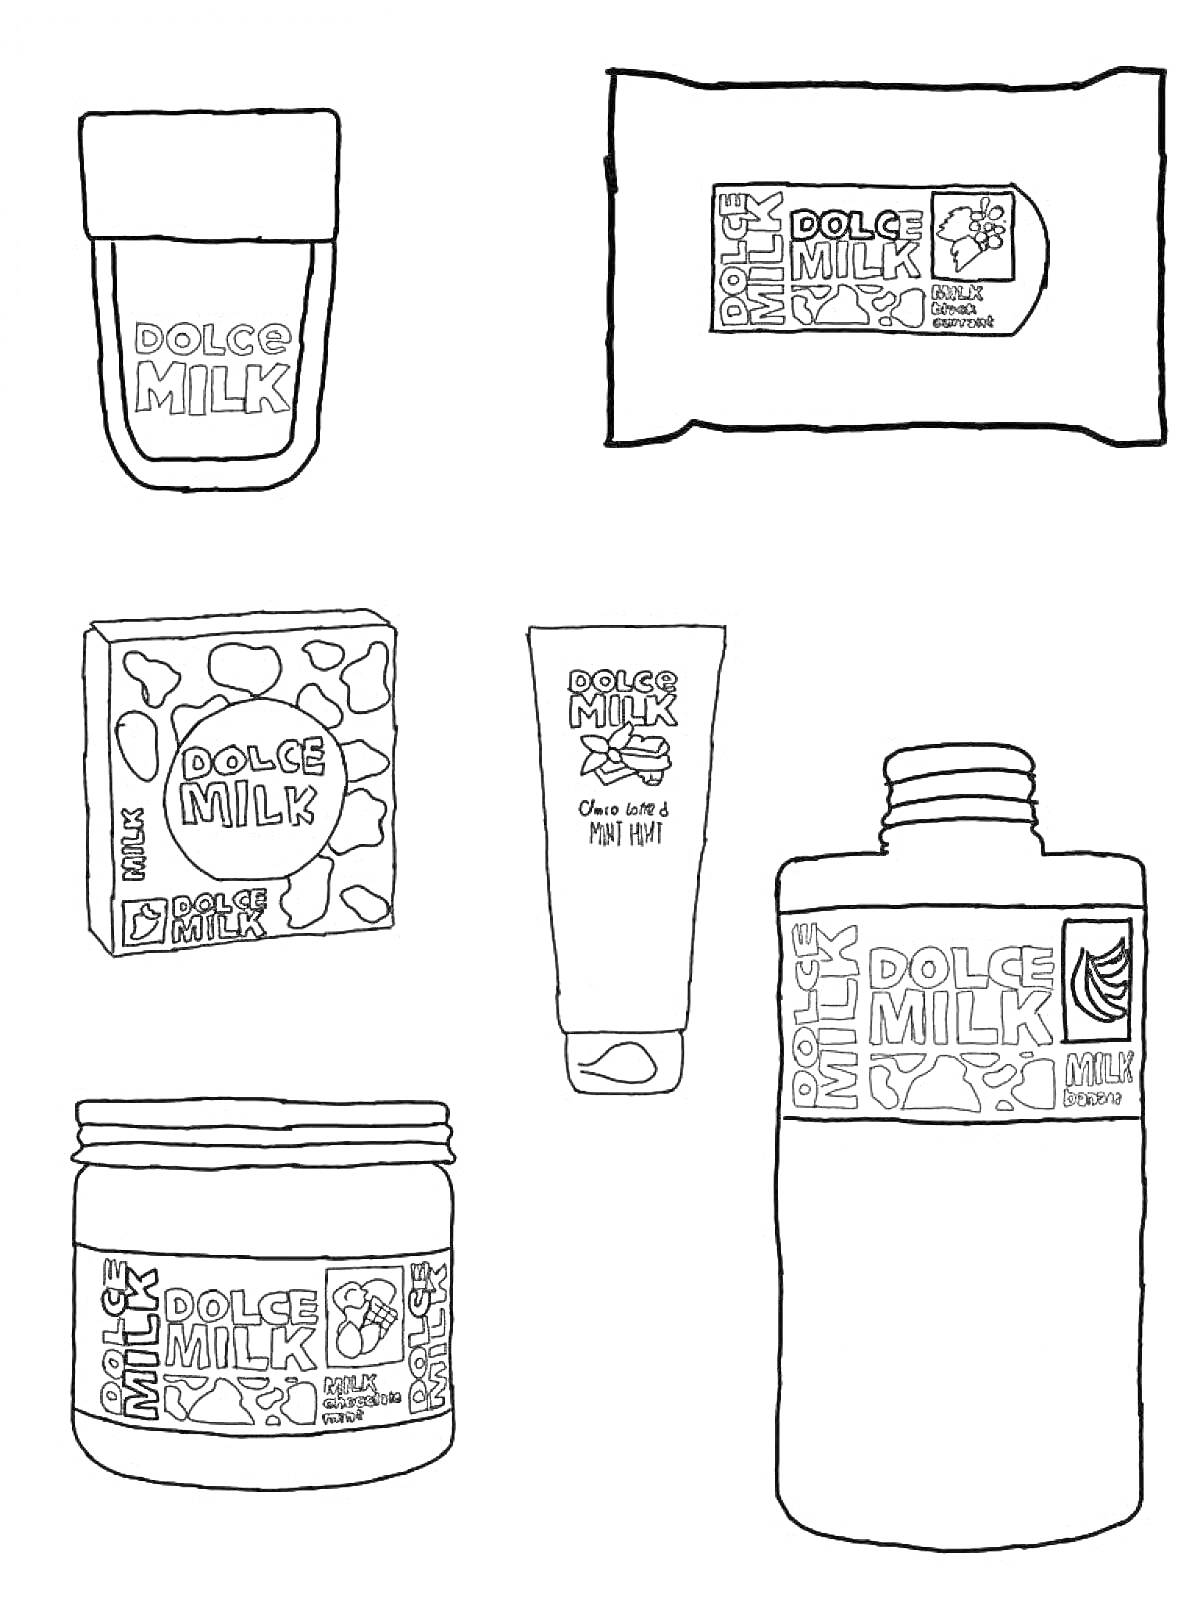 РаскраскаНабор продуктов Dolce Milk, включающий тюбик, влажные салфетки, коробку, крем, баночку и бутылку